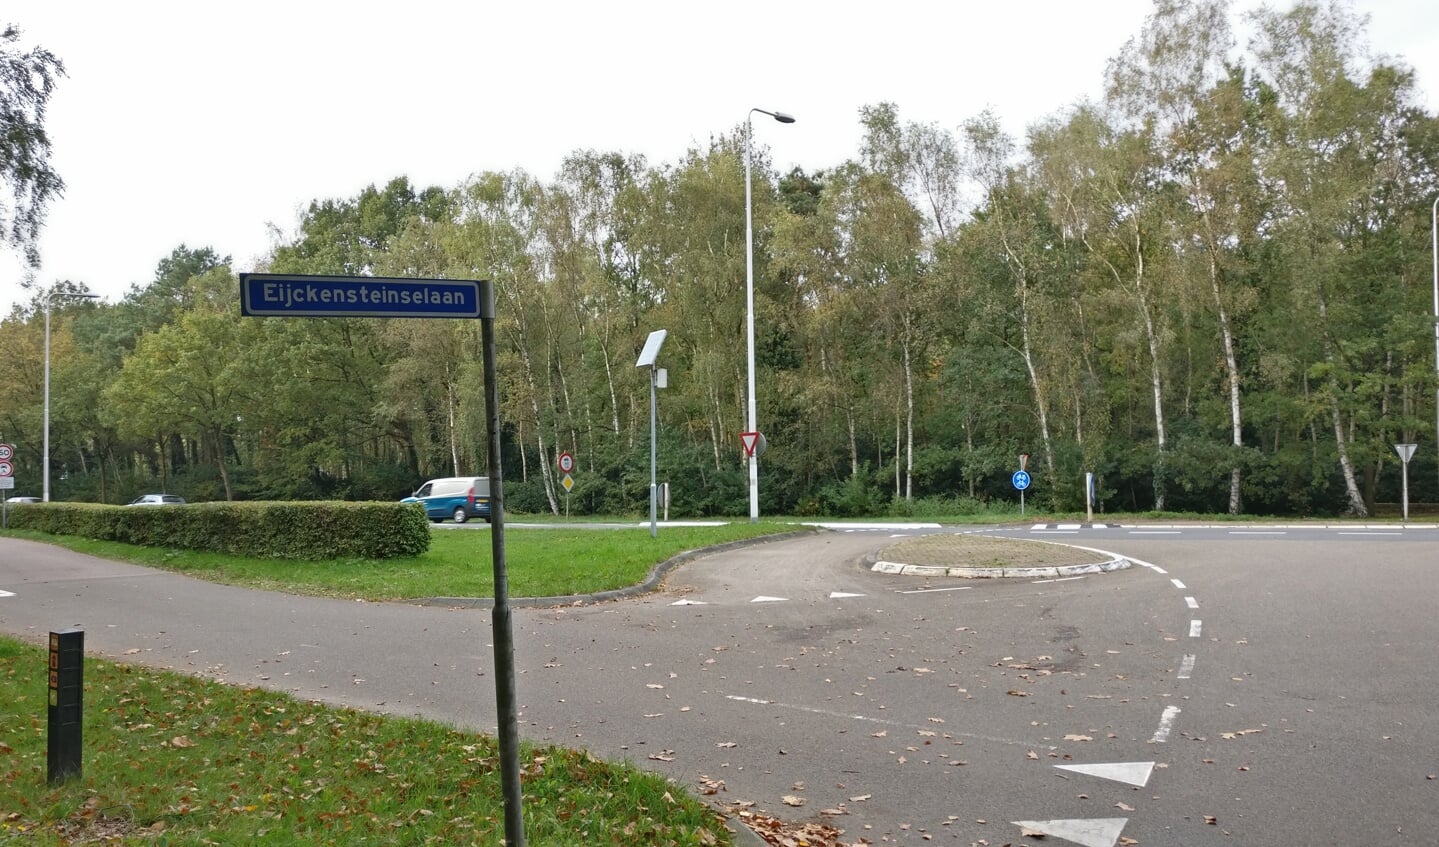 De Eijckensteinselaan is een zijweg van de Nieuwe Weteringseweg, de provinciale weg tussen Soest en Utrecht. .